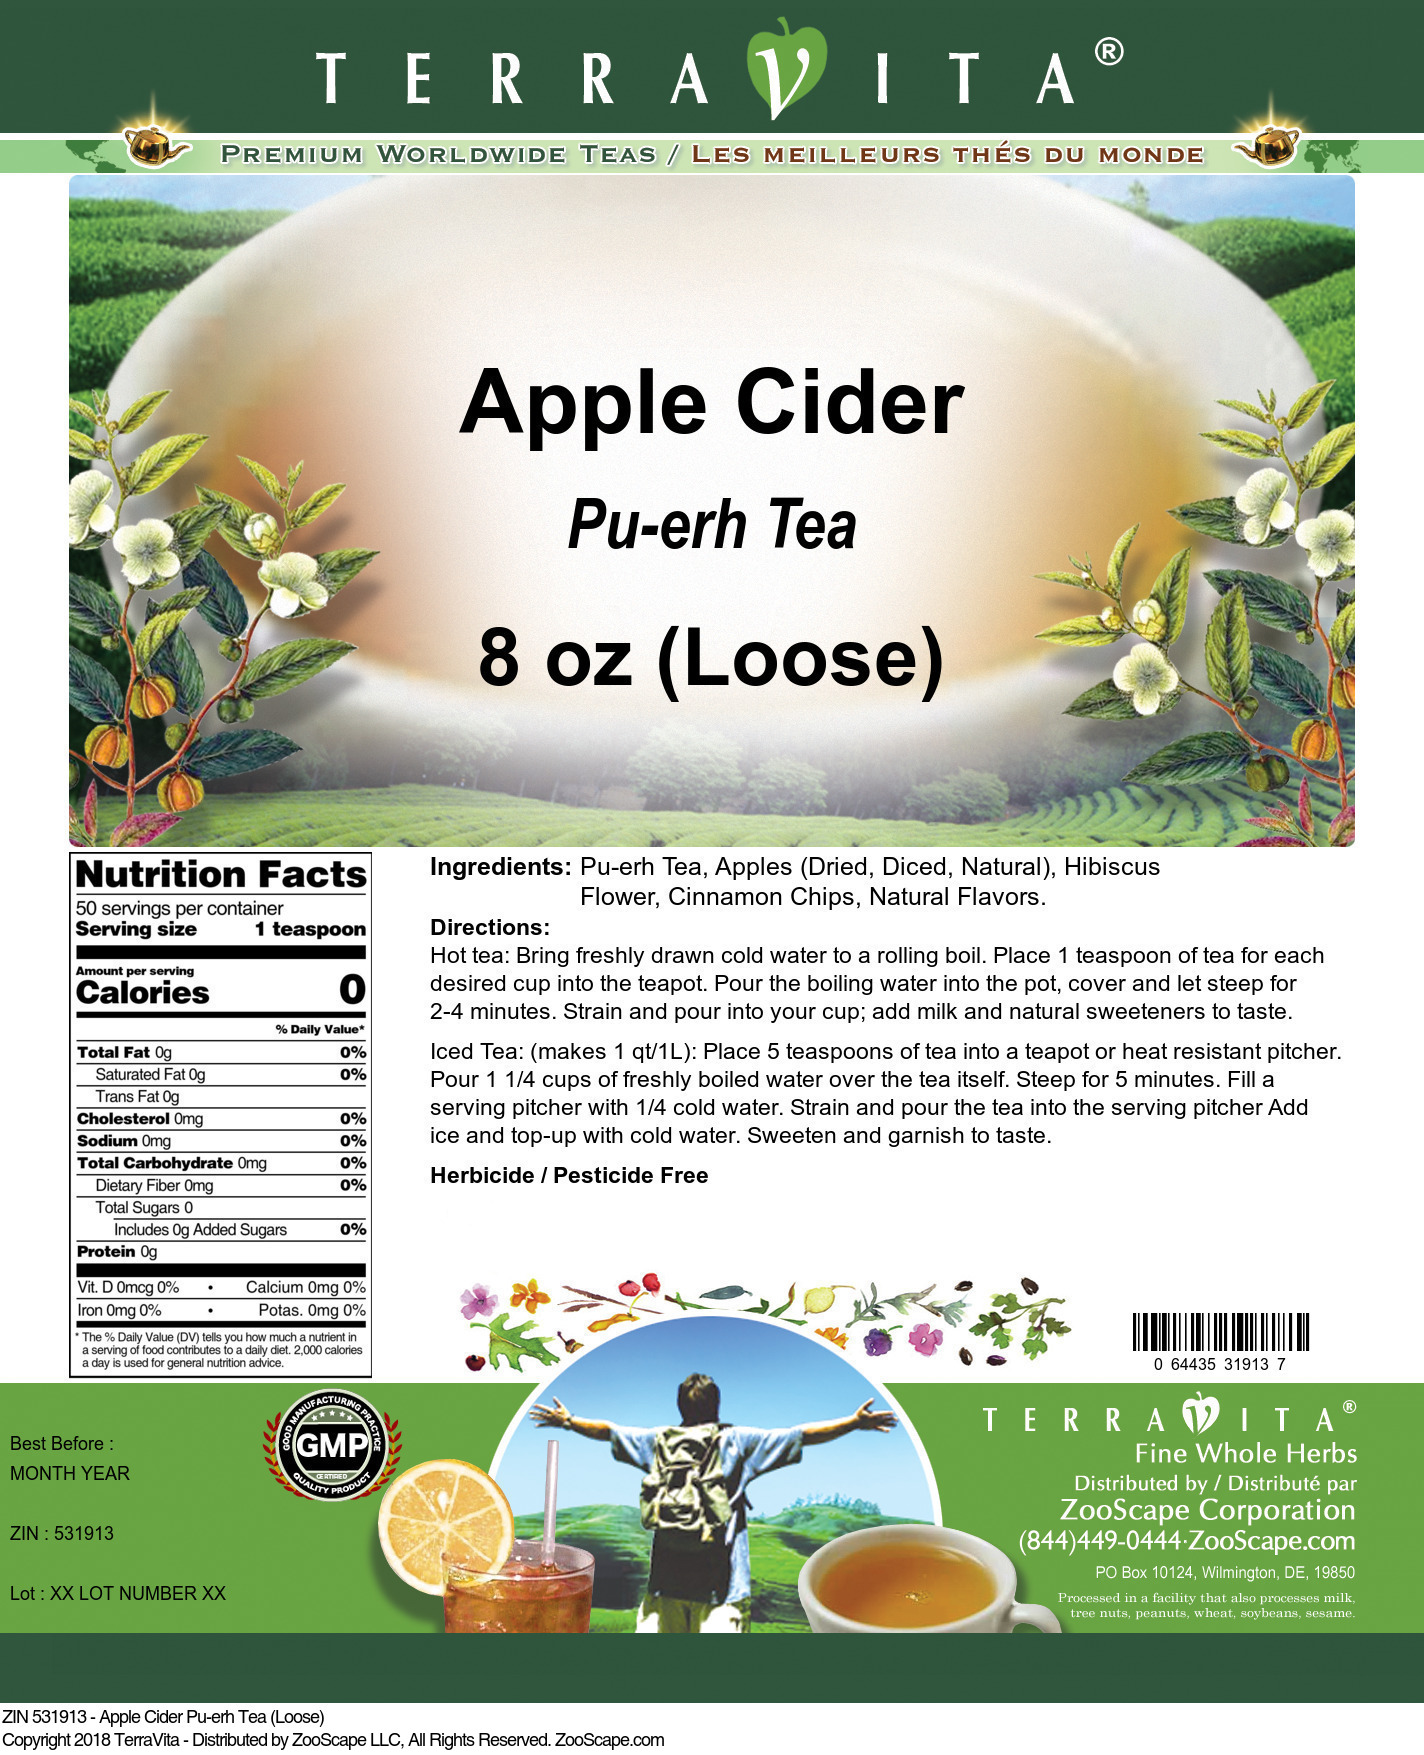 Apple Cider Pu-erh Tea (Loose) - Label